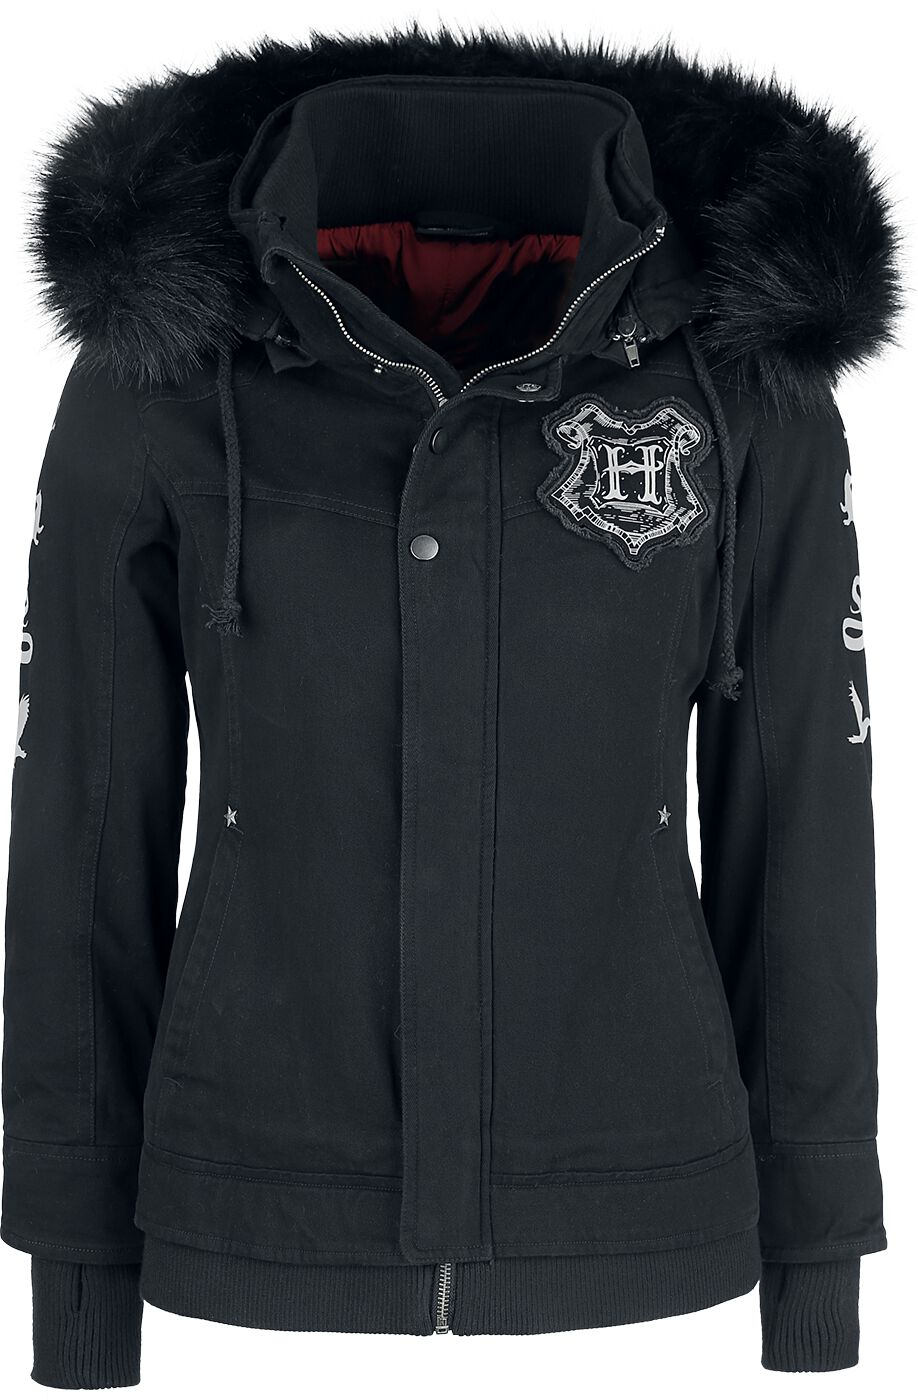 Harry Potter Winterjacke - Hogwarts Crest - XS bis XXL - für Damen - Größe M - schwarz  - EMP exklusives Merchandise!